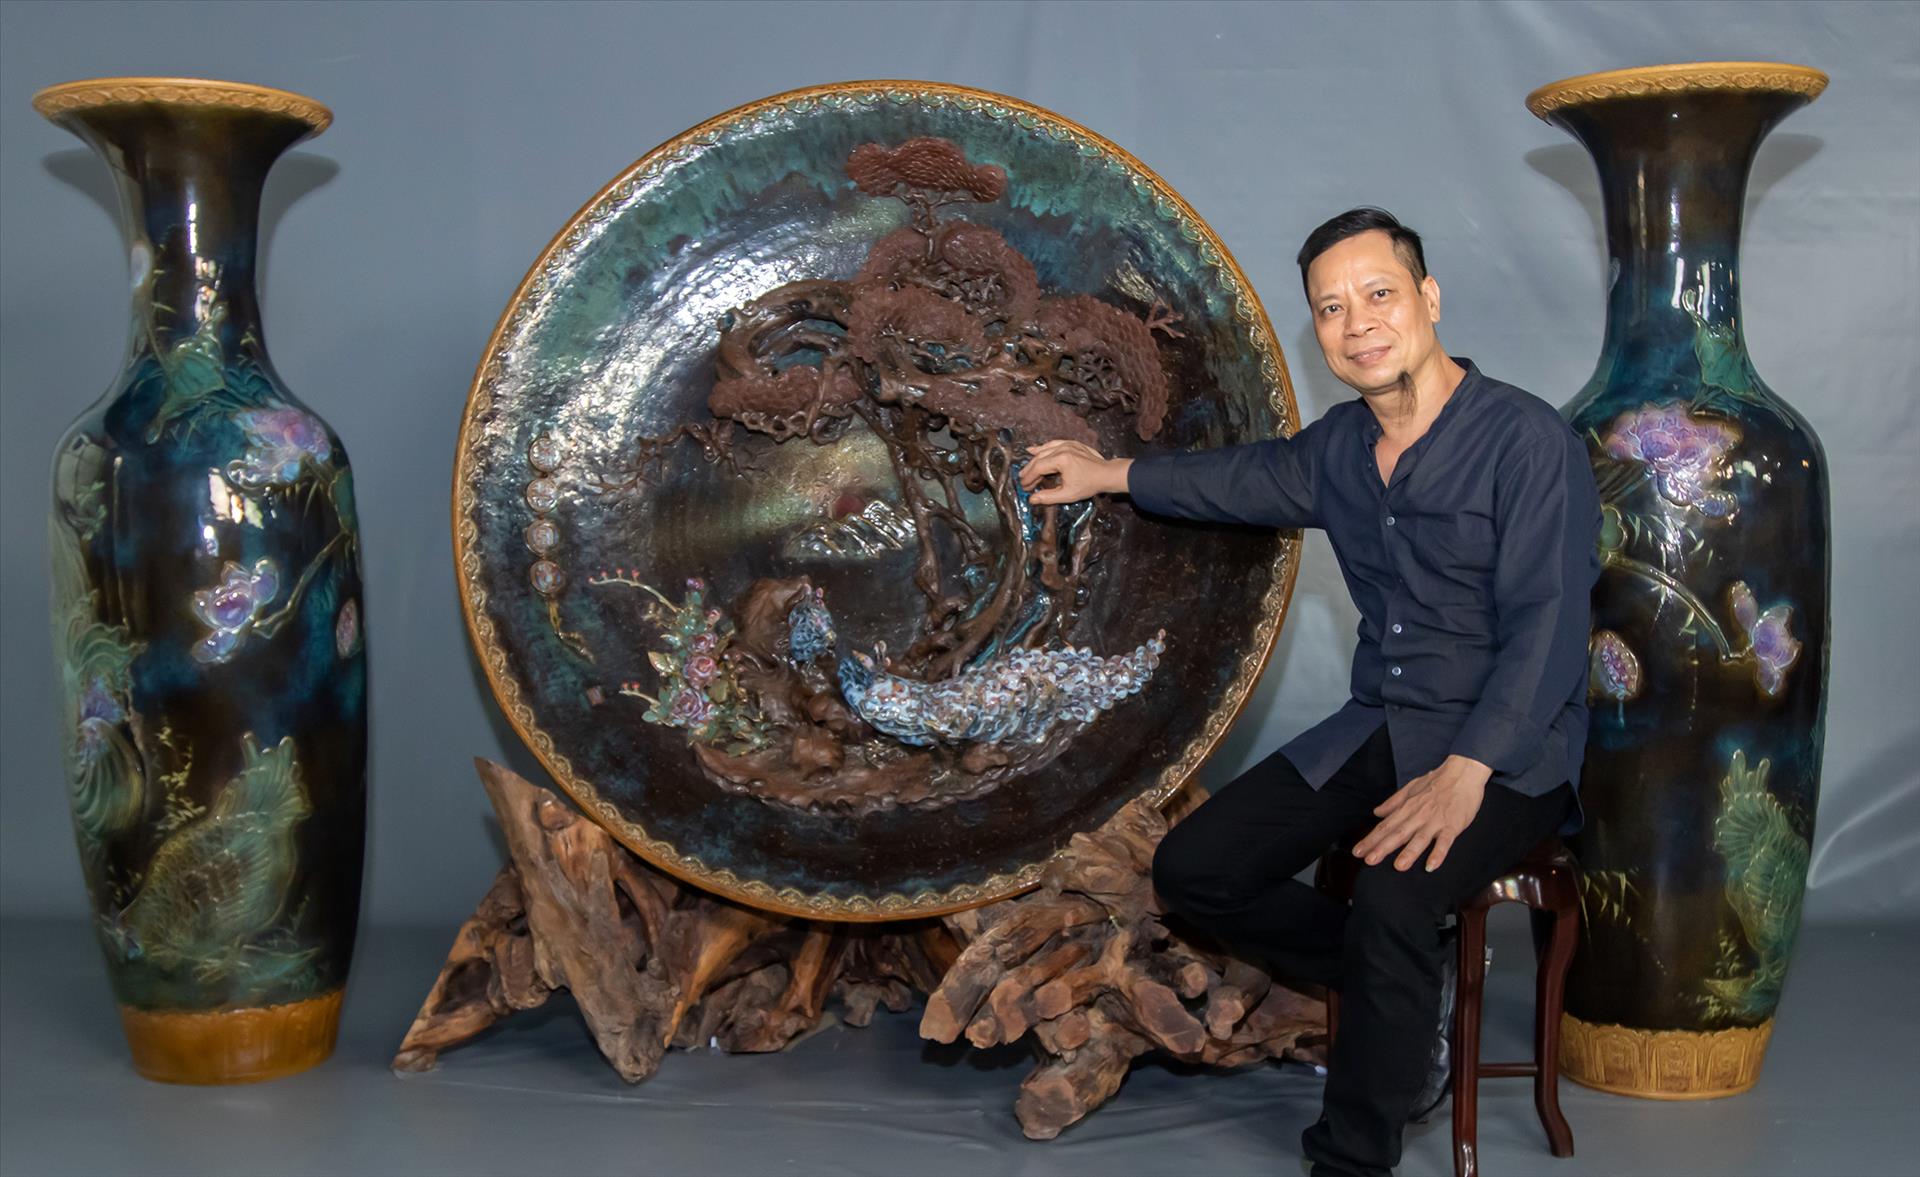 Guinness Records for Ceramic Works: kỷ lục Guinness cho sản phẩm gốm của nghệ nhân Nguyễn Hưng - Nghệ nhân gốm Nguyễn Hưng đã chính thức thiết lập kỷ lục Guinness về sản phẩm gốm lớn nhất thế giới với chiếc bình trà có kích thước 2,5m x 1m. Sản phẩm này không chỉ là một tác phẩm nghệ thuật độc đáo mà còn thể hiện sự tinh hoa của nghề gốm truyền thống Việt Nam.